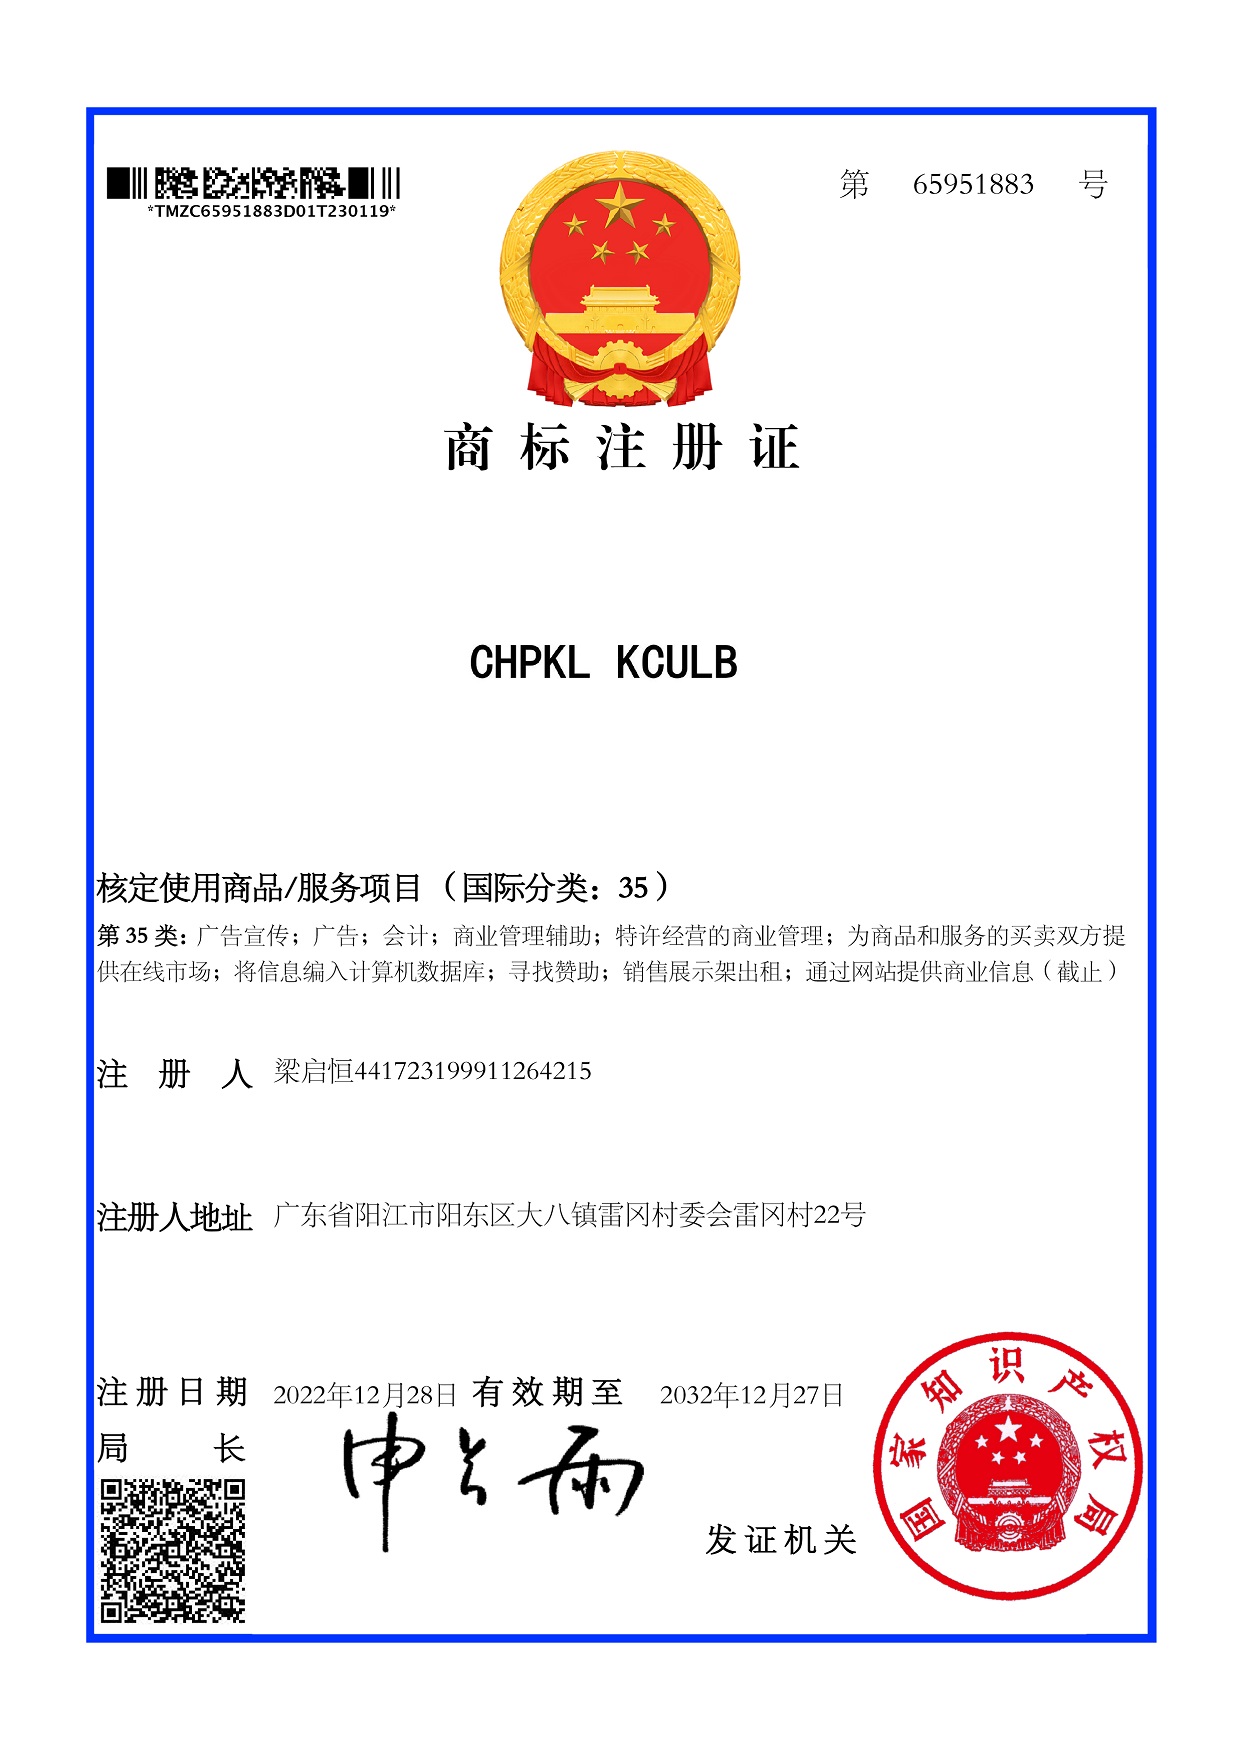 大信智和商标注册案例--CHPKL KCULB 第35类商标证